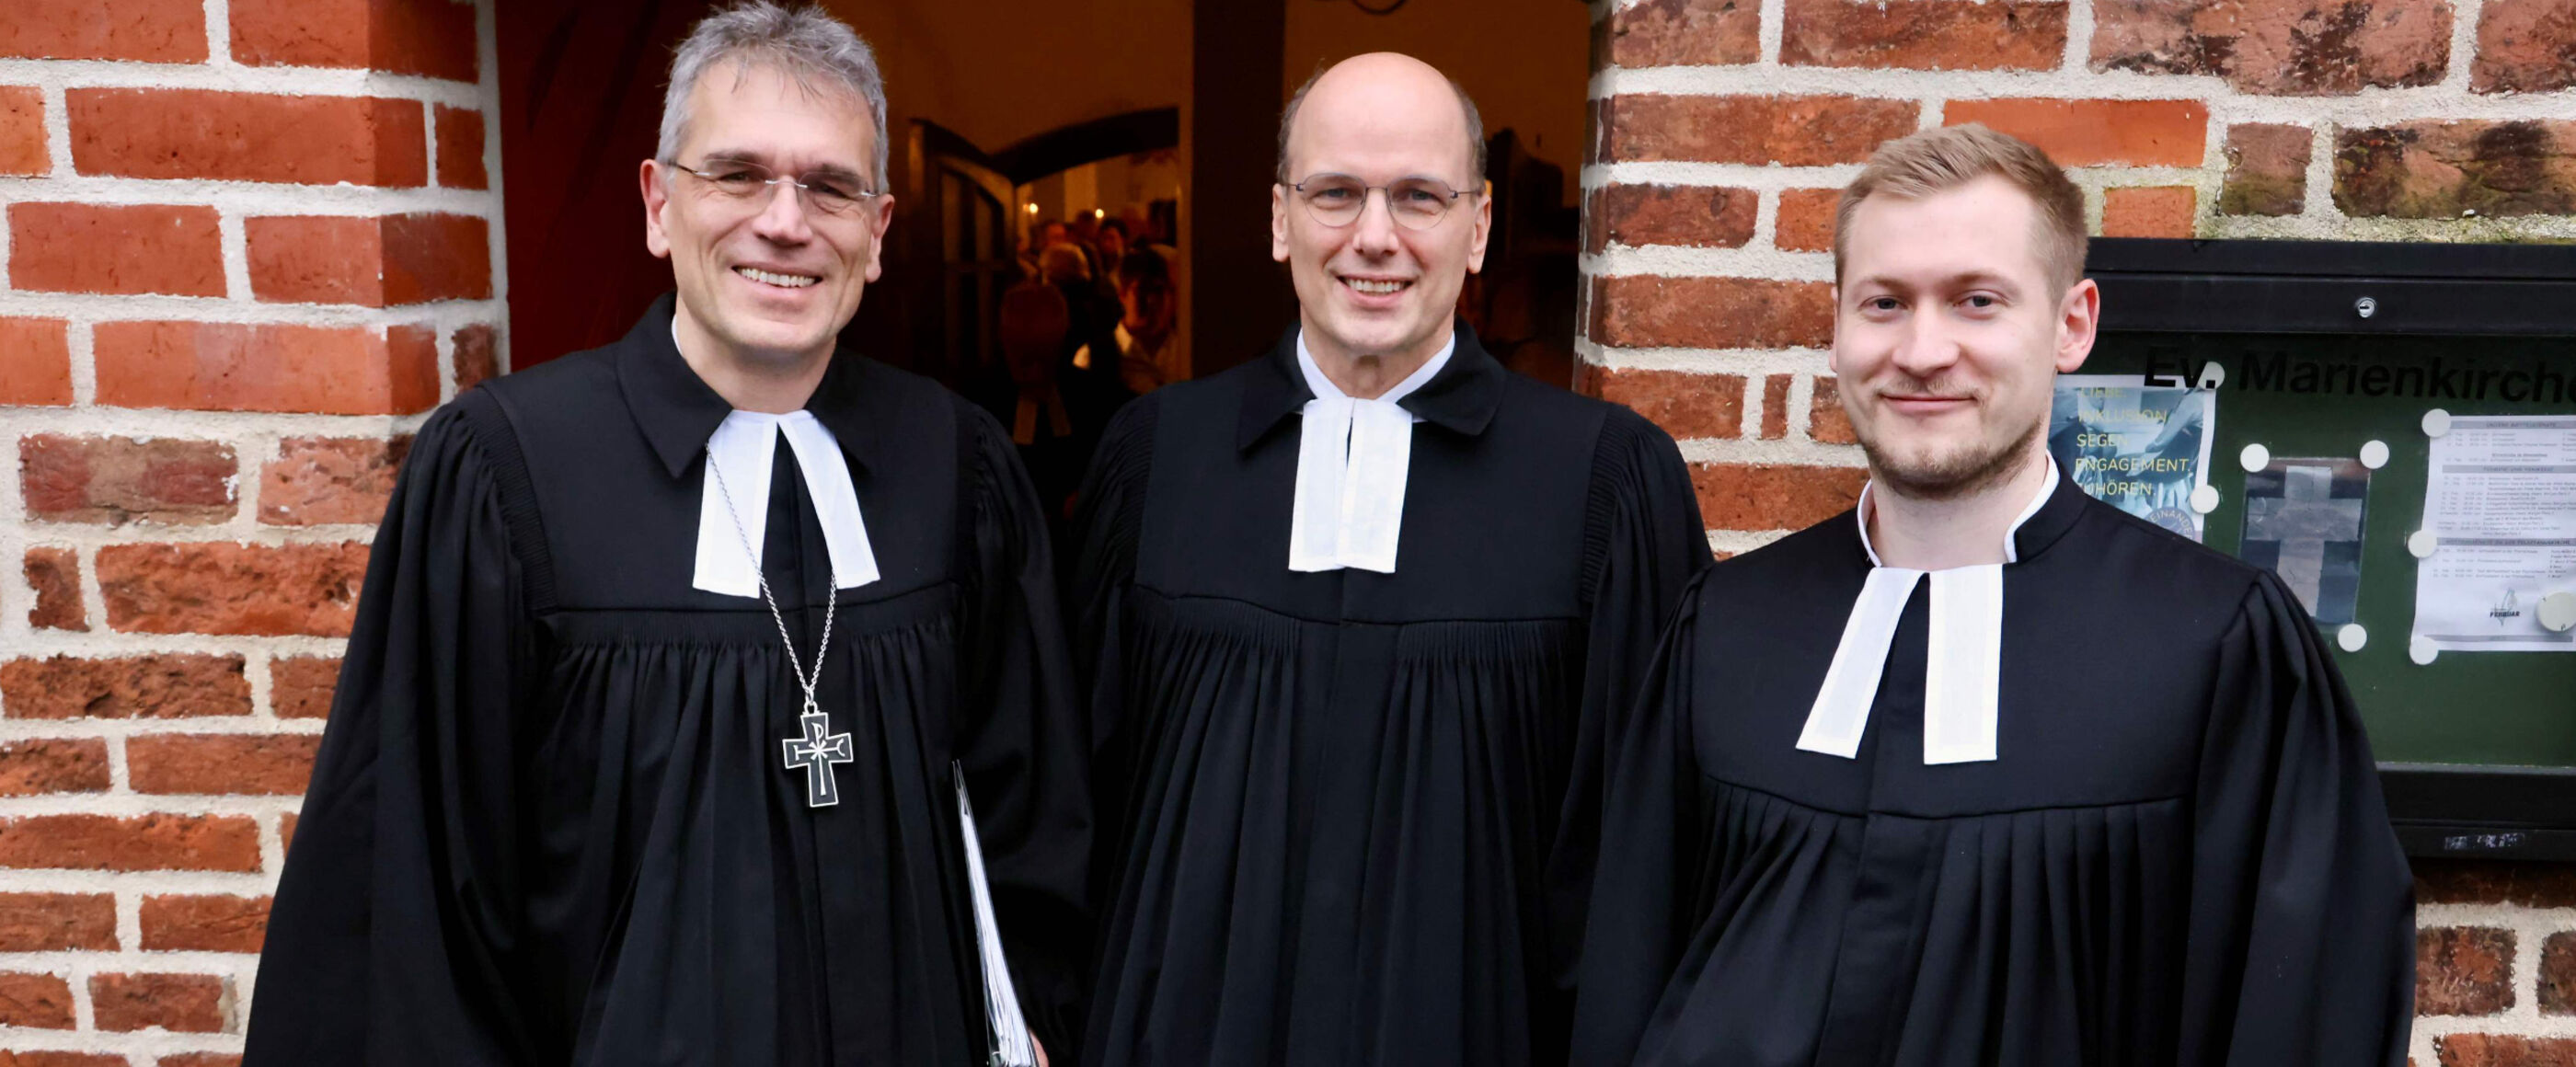 Drei Männer in Talar stehen vor einer Kirche und lächeln in die Kamera.